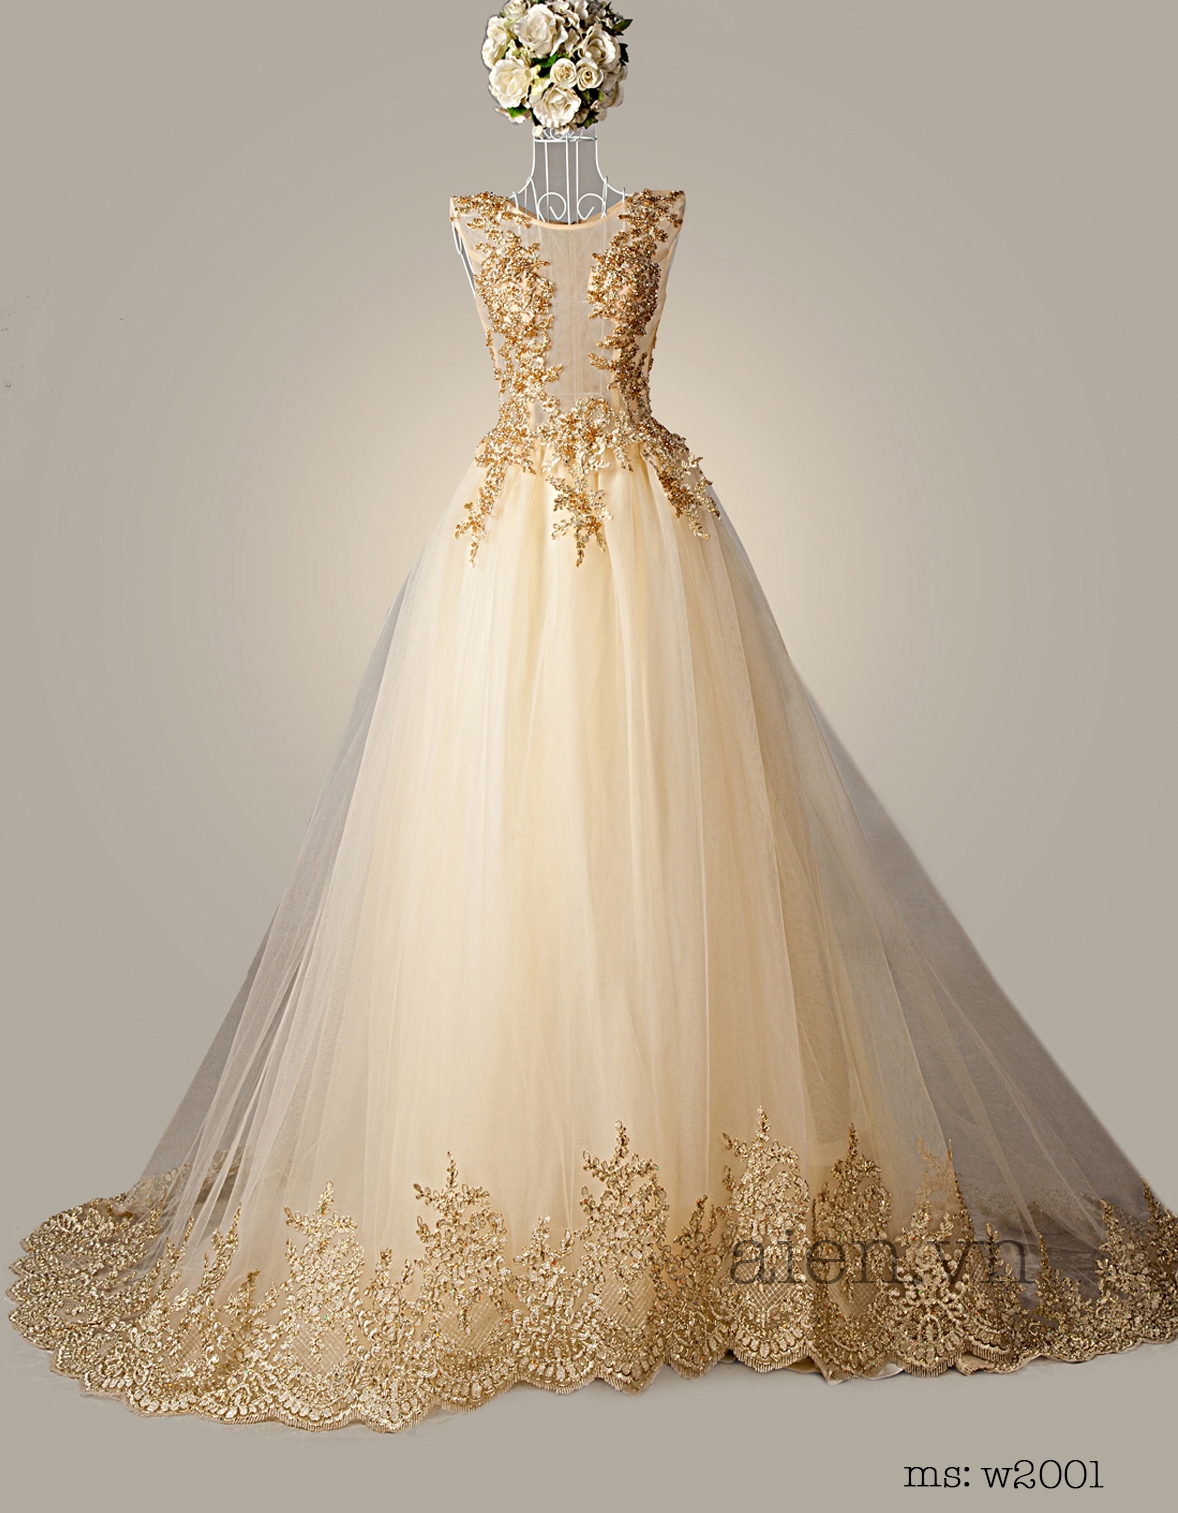 Váy cưới đẹp màu vàng đồng phối ren nổi sang trọng